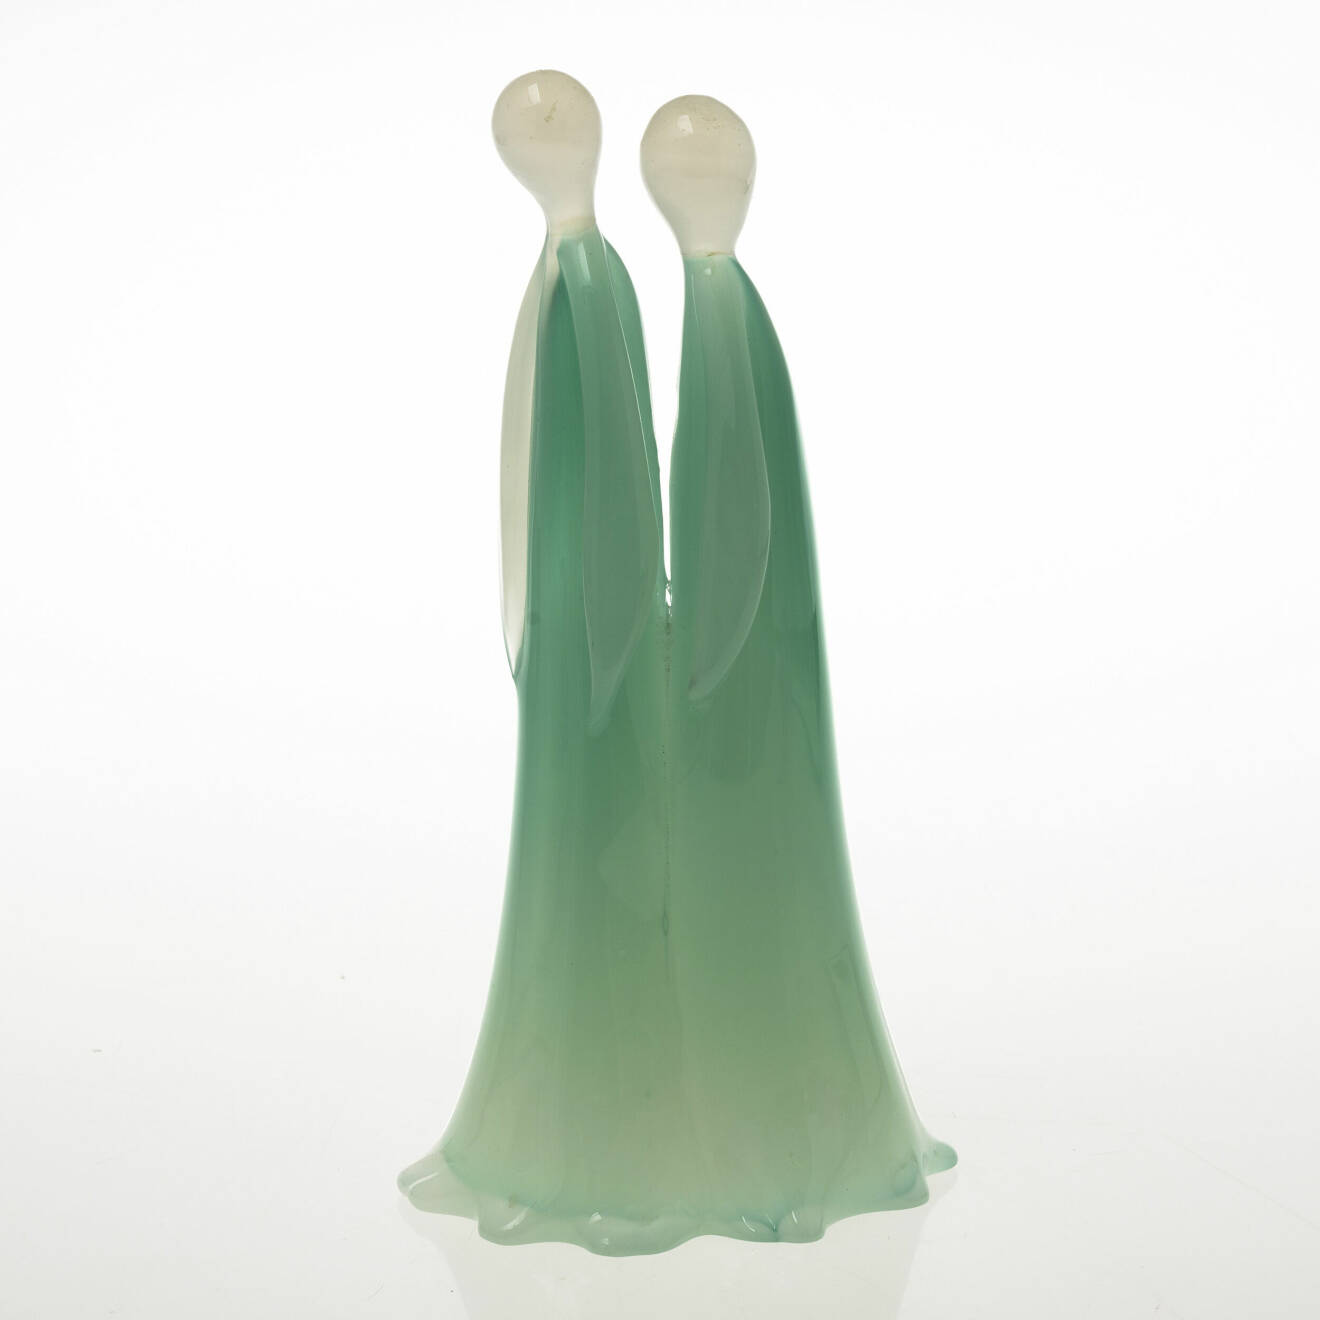 Figurinen i gröntonat och vitt glas med en höjd på 29,5cm såldes för två år sedan på Bukowskis. Slutsumman hamnade på 2572kr.